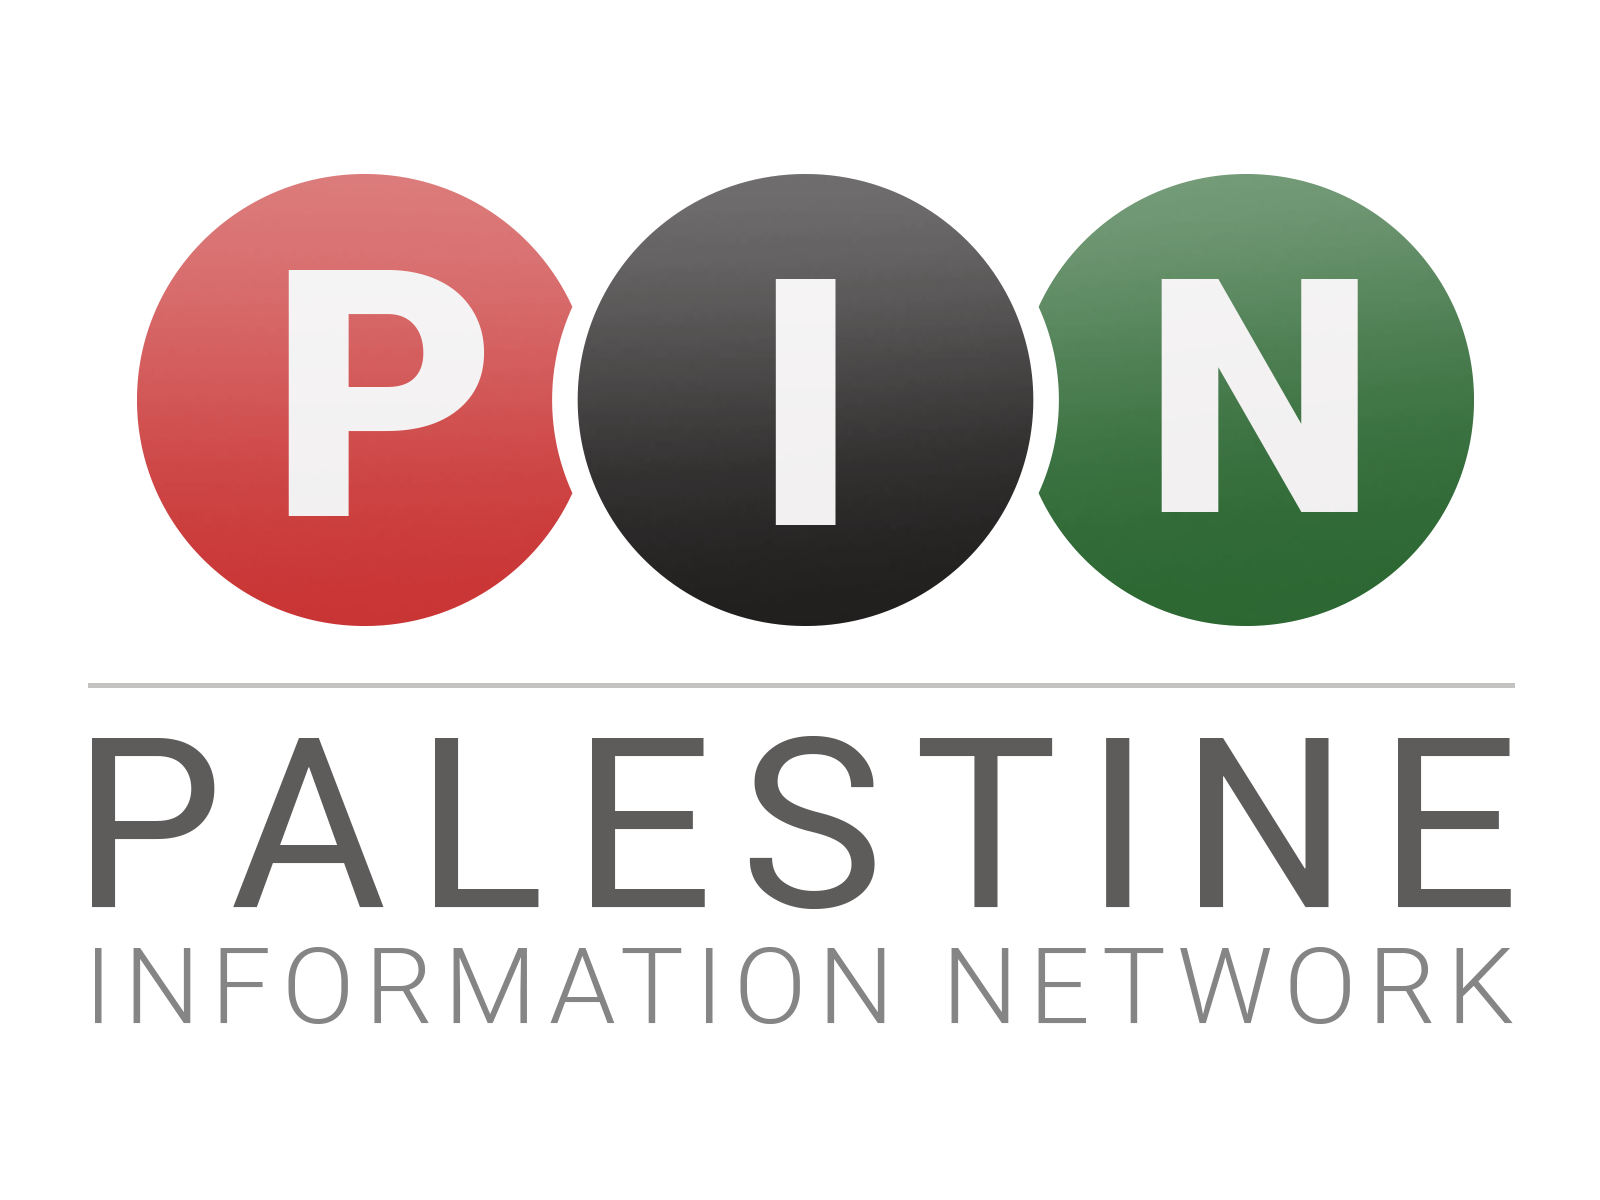 Palestine Information Network